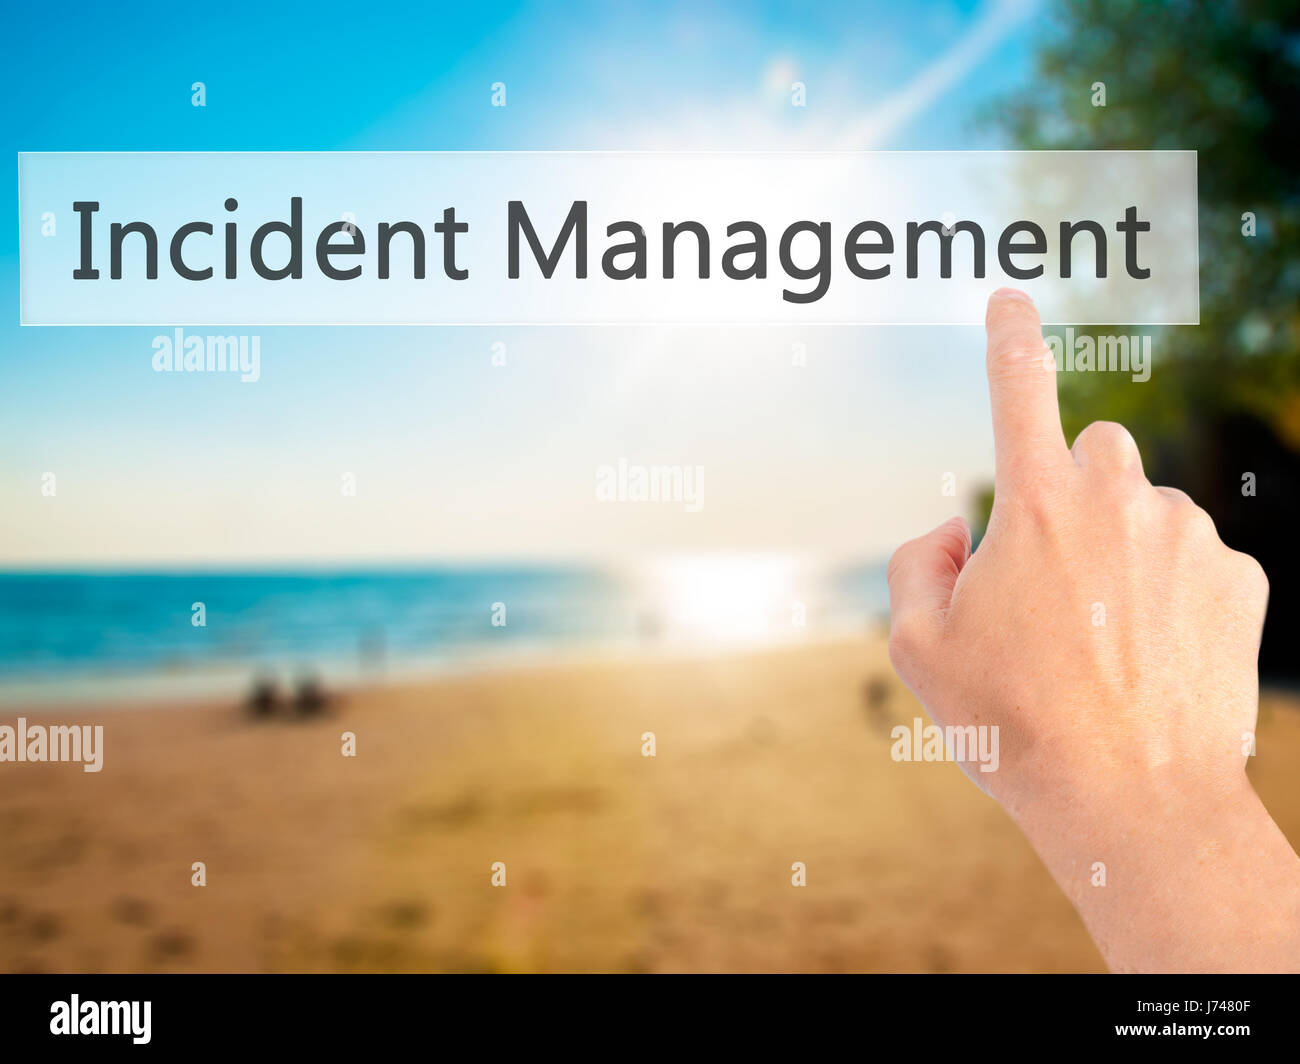 Incident Management - Mano premendo un pulsante sul fondo sfocato concetto . Business, tecnologia internet concetto. Stock Photo Foto Stock